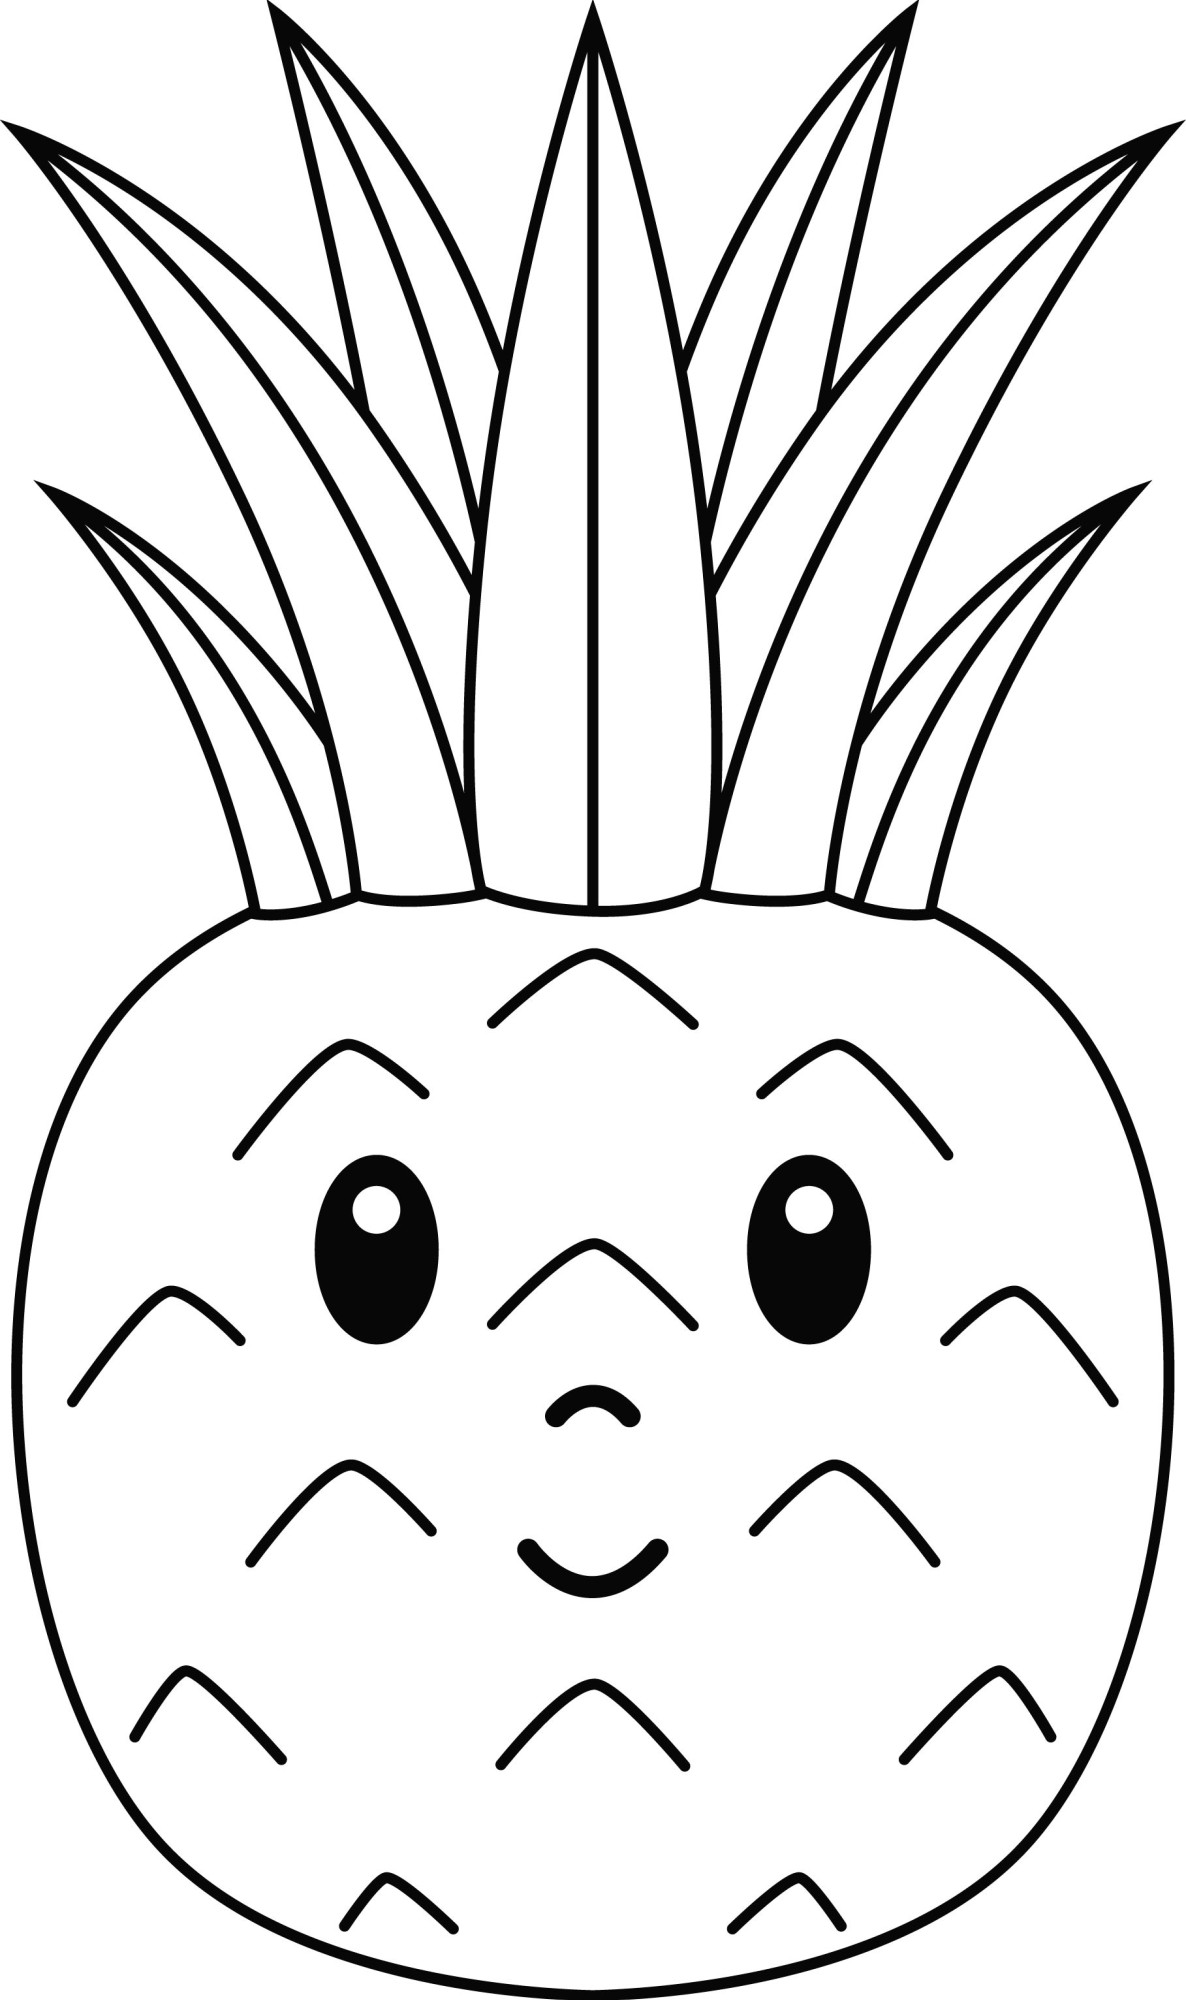 Раскраска для детей: сказочный ананас с глазами